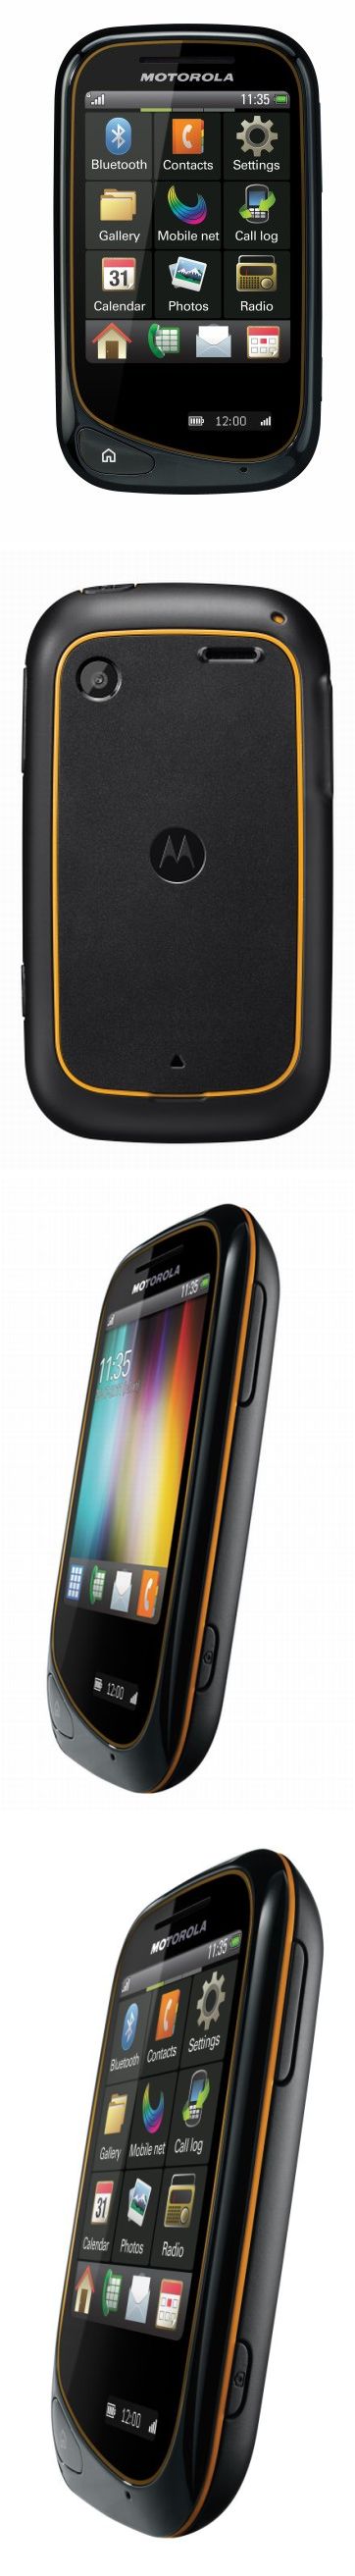 Motorola Wilder: pénztárcabarát telefon